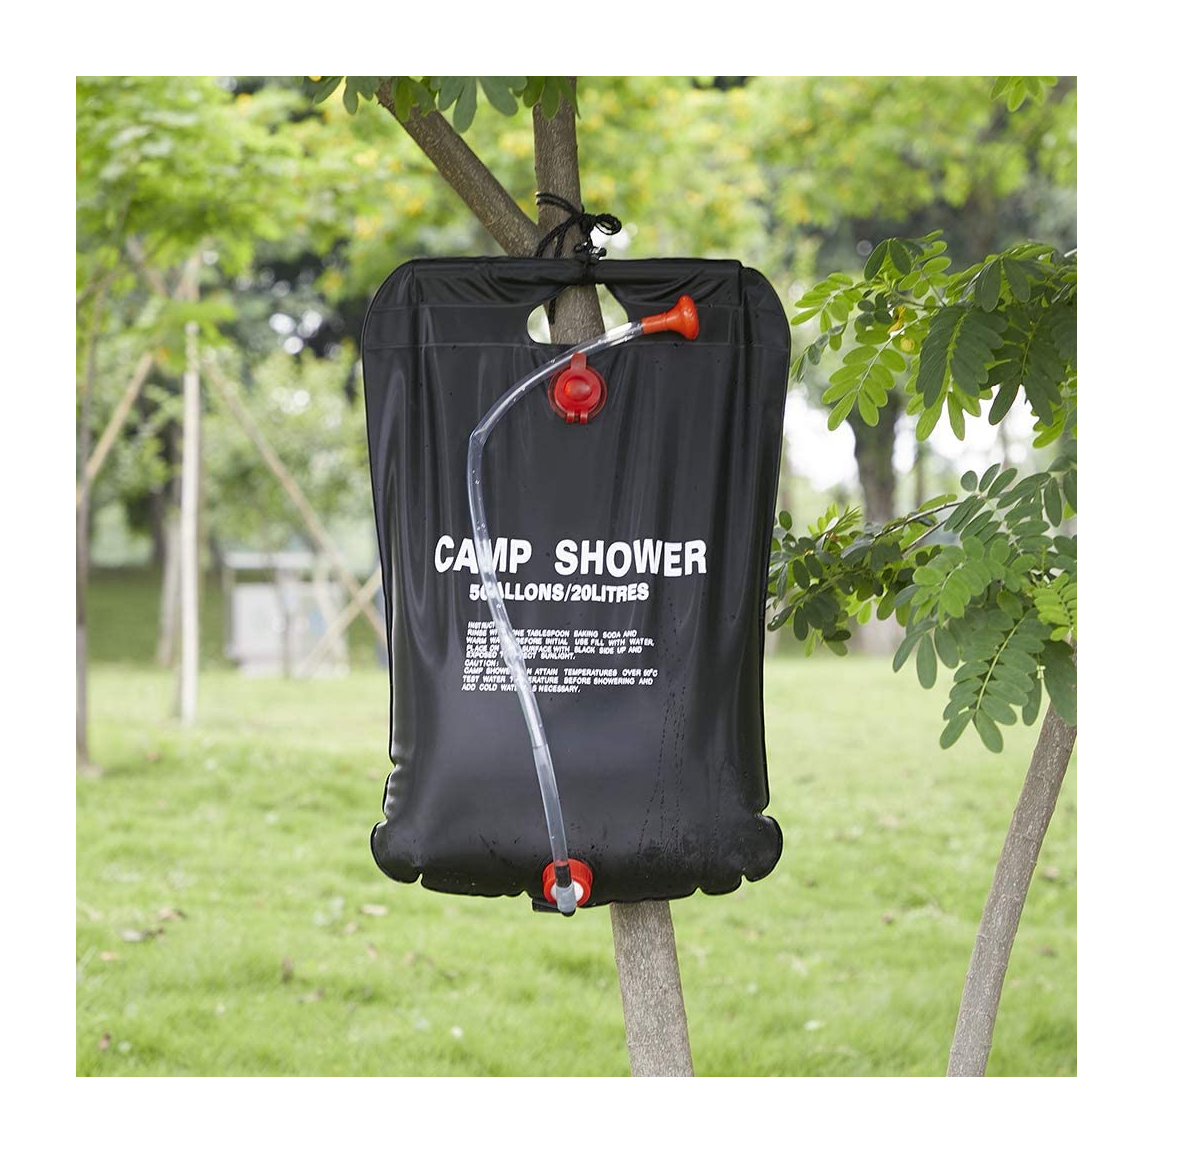 Ducha Shower 20L Portatil Camping DPT1